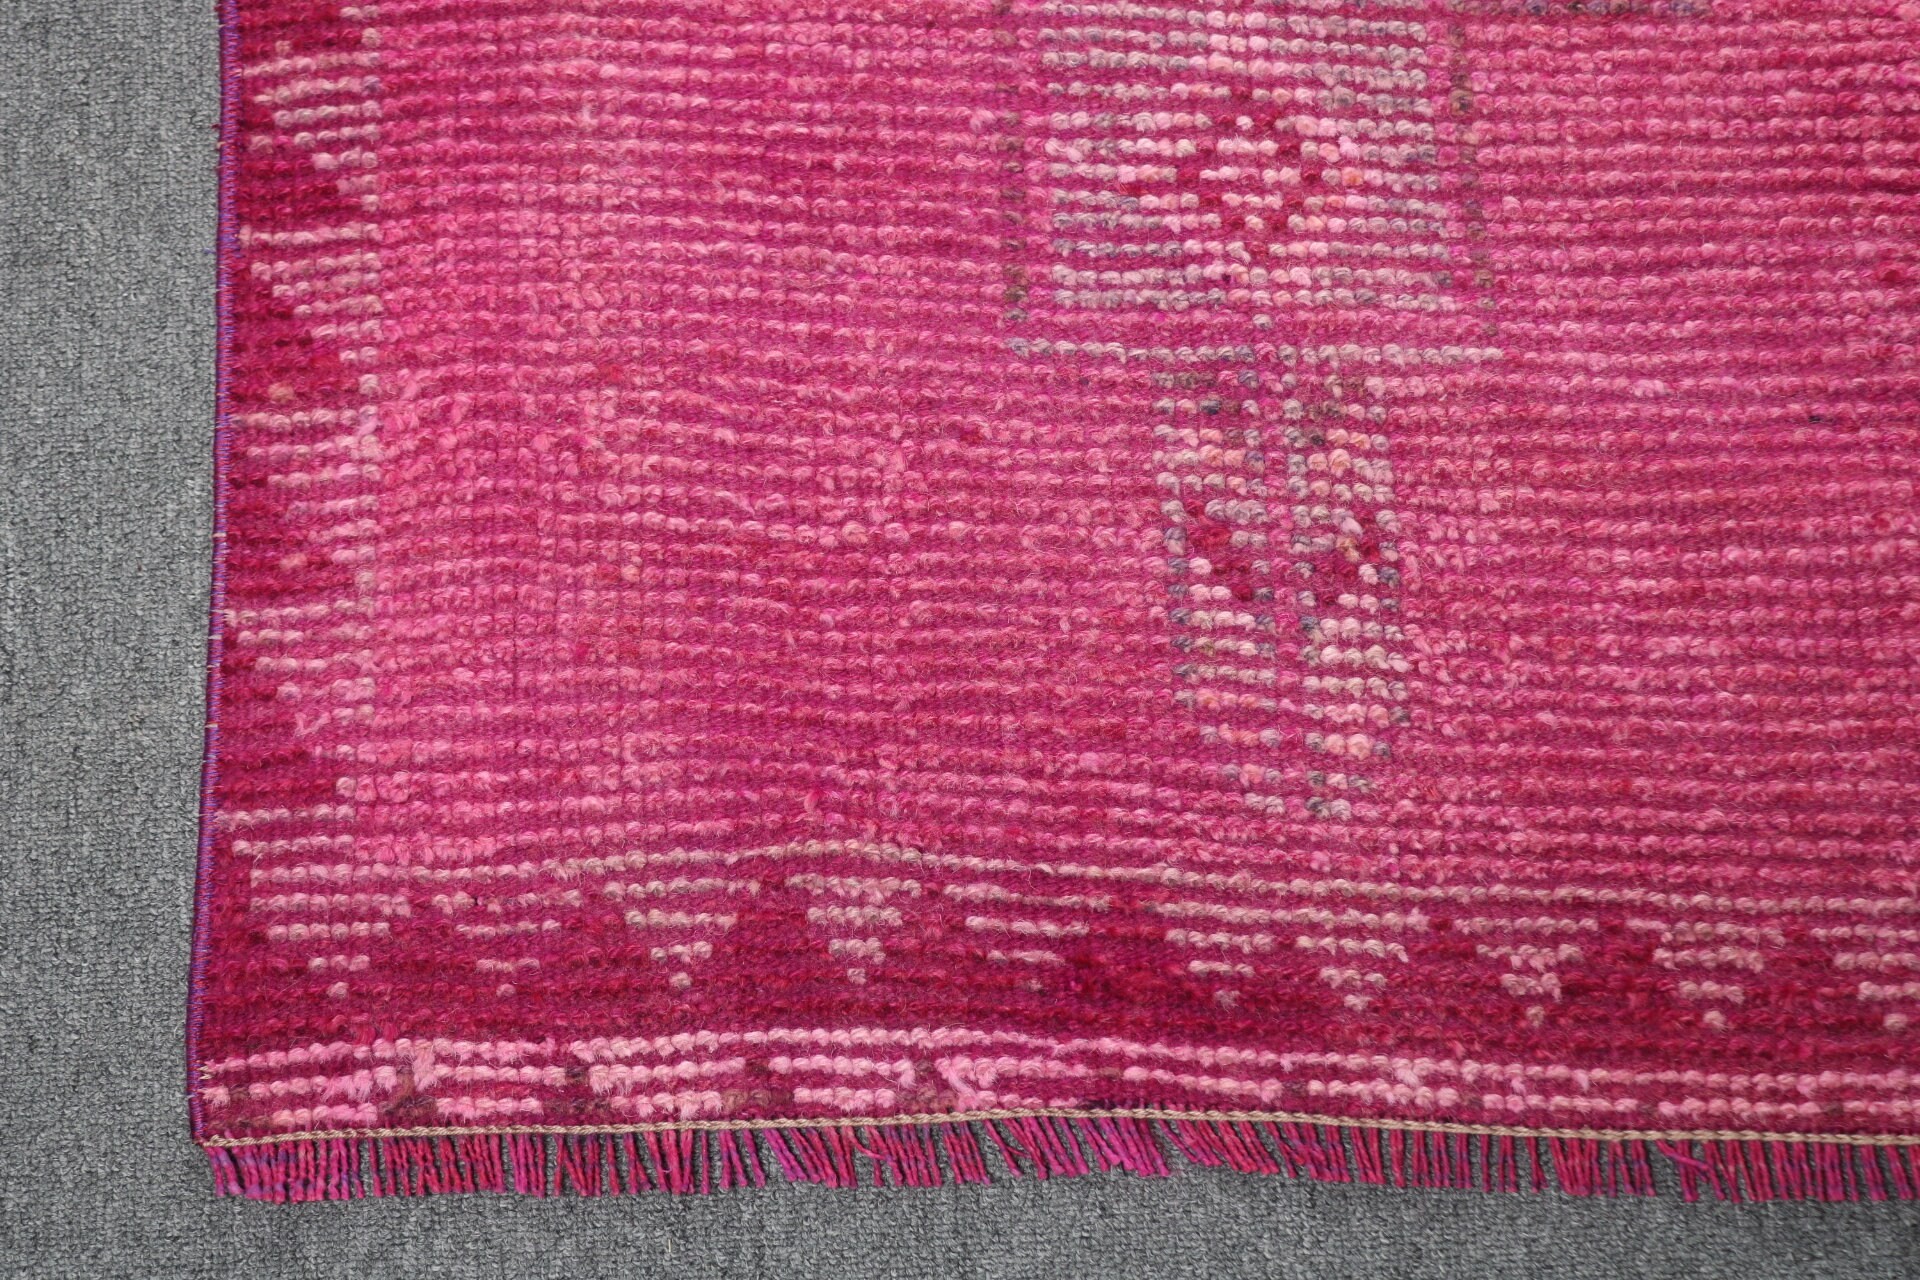 Wool Rugs, Turkish Rug, Rugs for Runner, Stair Rug, Colorful Rug, Decorative Rugs, Old Rug, Vintage Rugs, Kitchen Rug, 2.4x8 ft Runner Rug